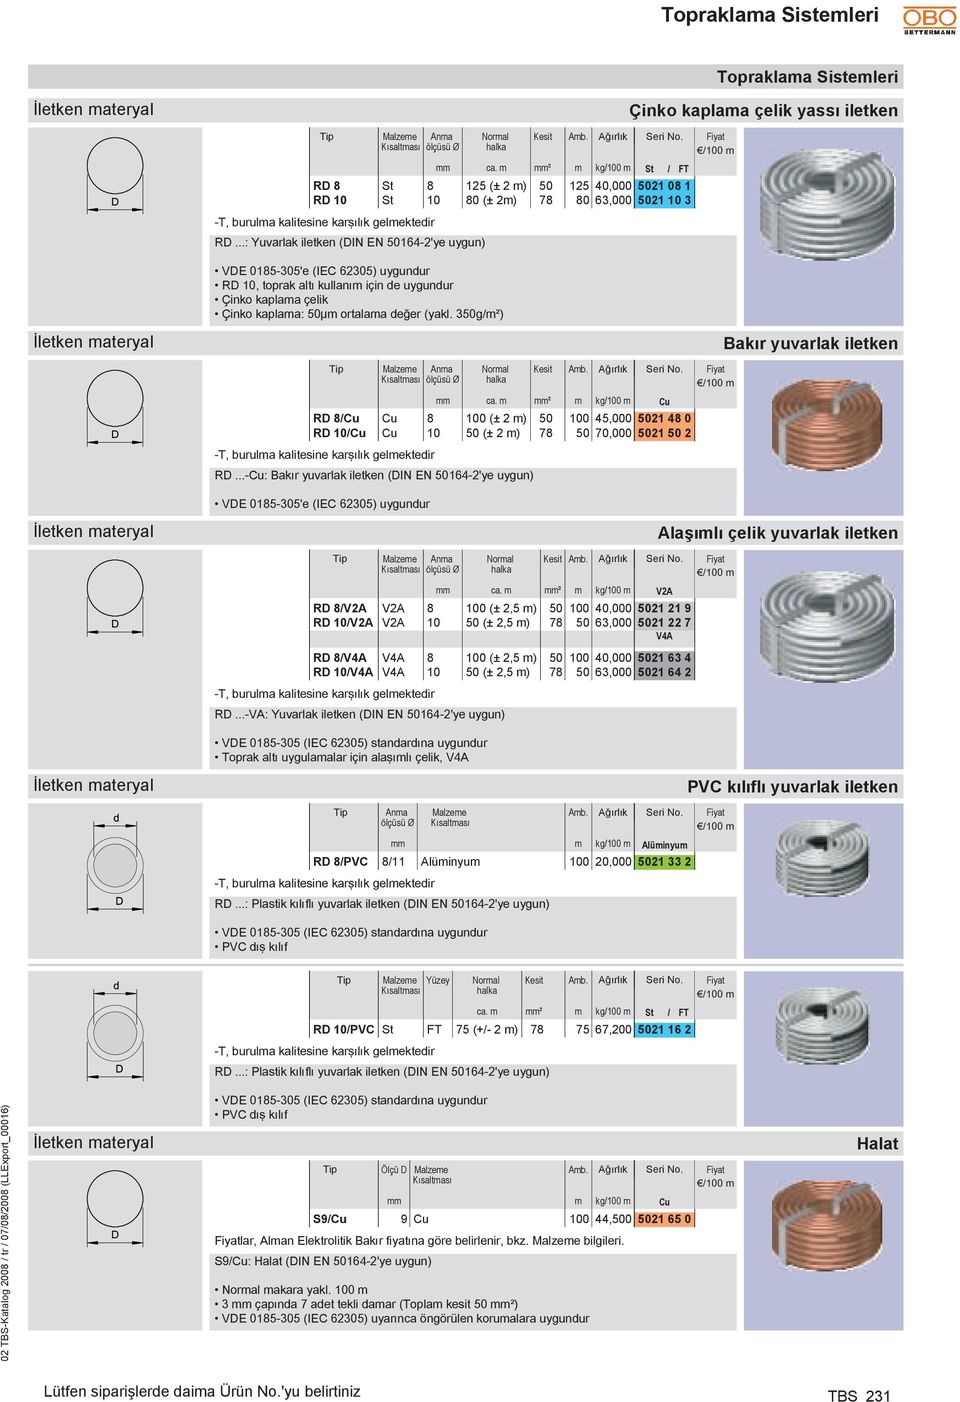 ..: Yuvarlak iletken (DIN EN 50164-2'ye uygun) Normal halka Kesit Çinko kaplama çelik yassı iletken /100 m VDE 0185-305'e (IEC 62305) uygundur RD 10, toprak altı kullanım de uygundur Çinko kaplama